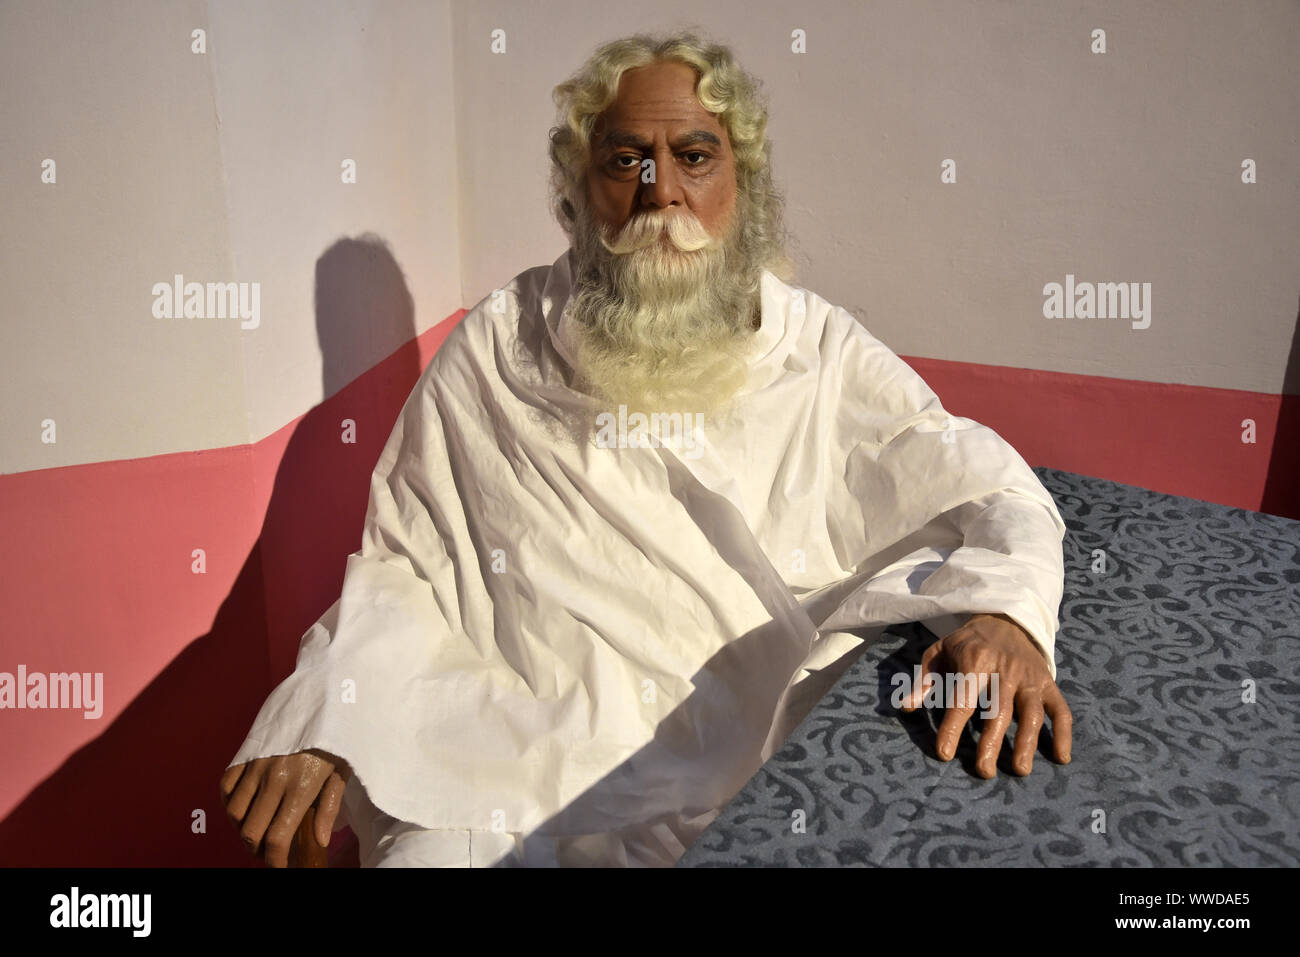 Statue de cire de Rabindranath Tagore, poète indien qui a remporté le prix Nobel de littérature en 1913 Banque D'Images